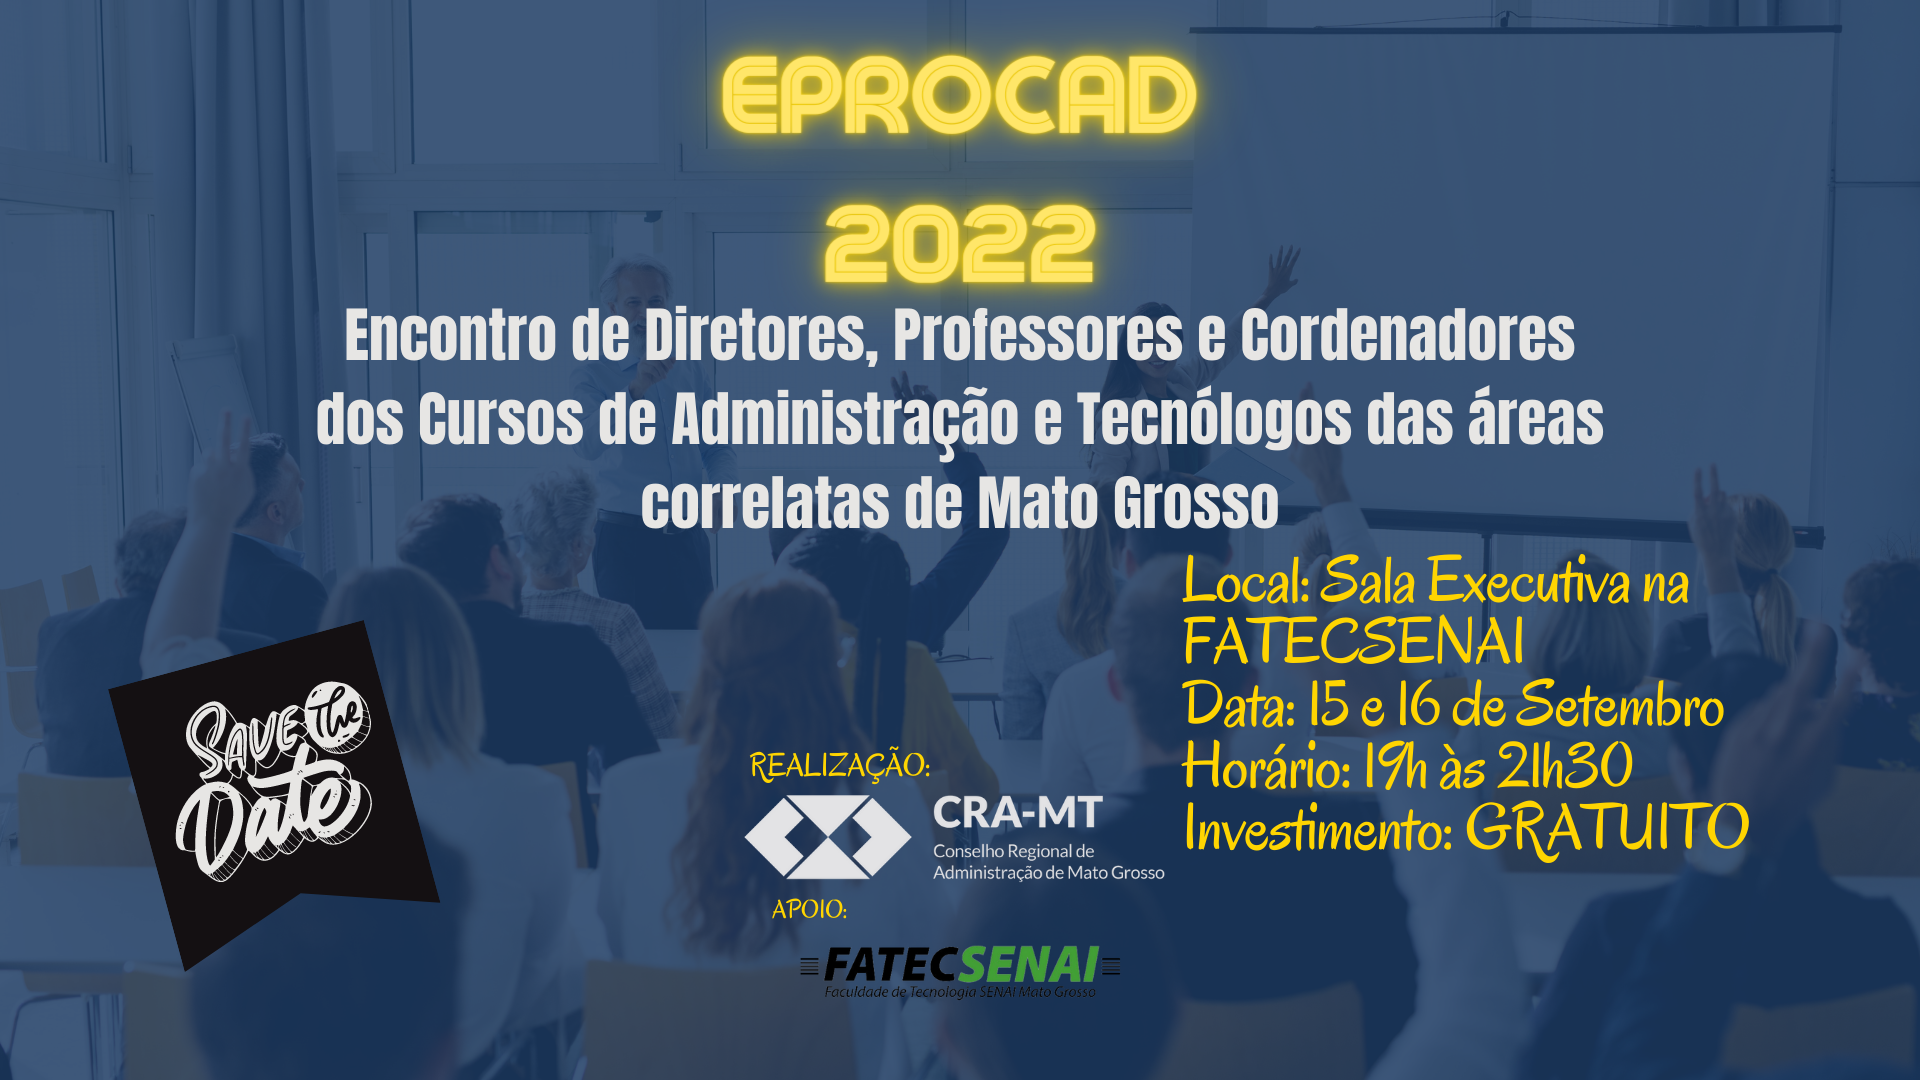 You are currently viewing EPROCAD_2022 – Encontro de Diretores, Professores e Coordenadores do Cursos de Administração e Tecnólogos das áreas correlatas a Administração